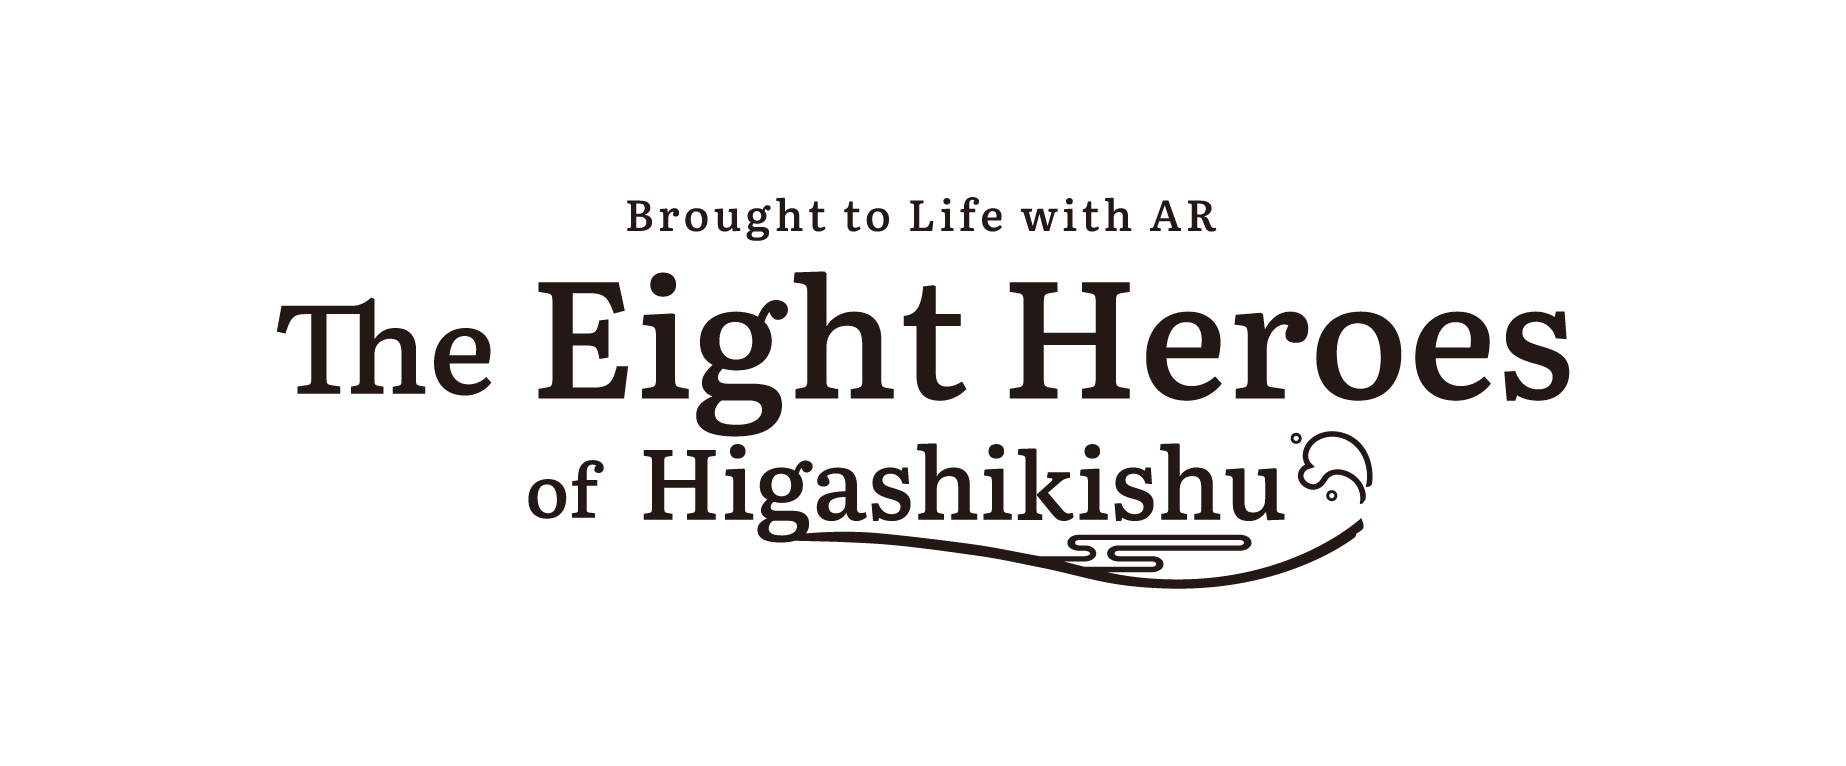 The Eight Heroes of Higashikishu